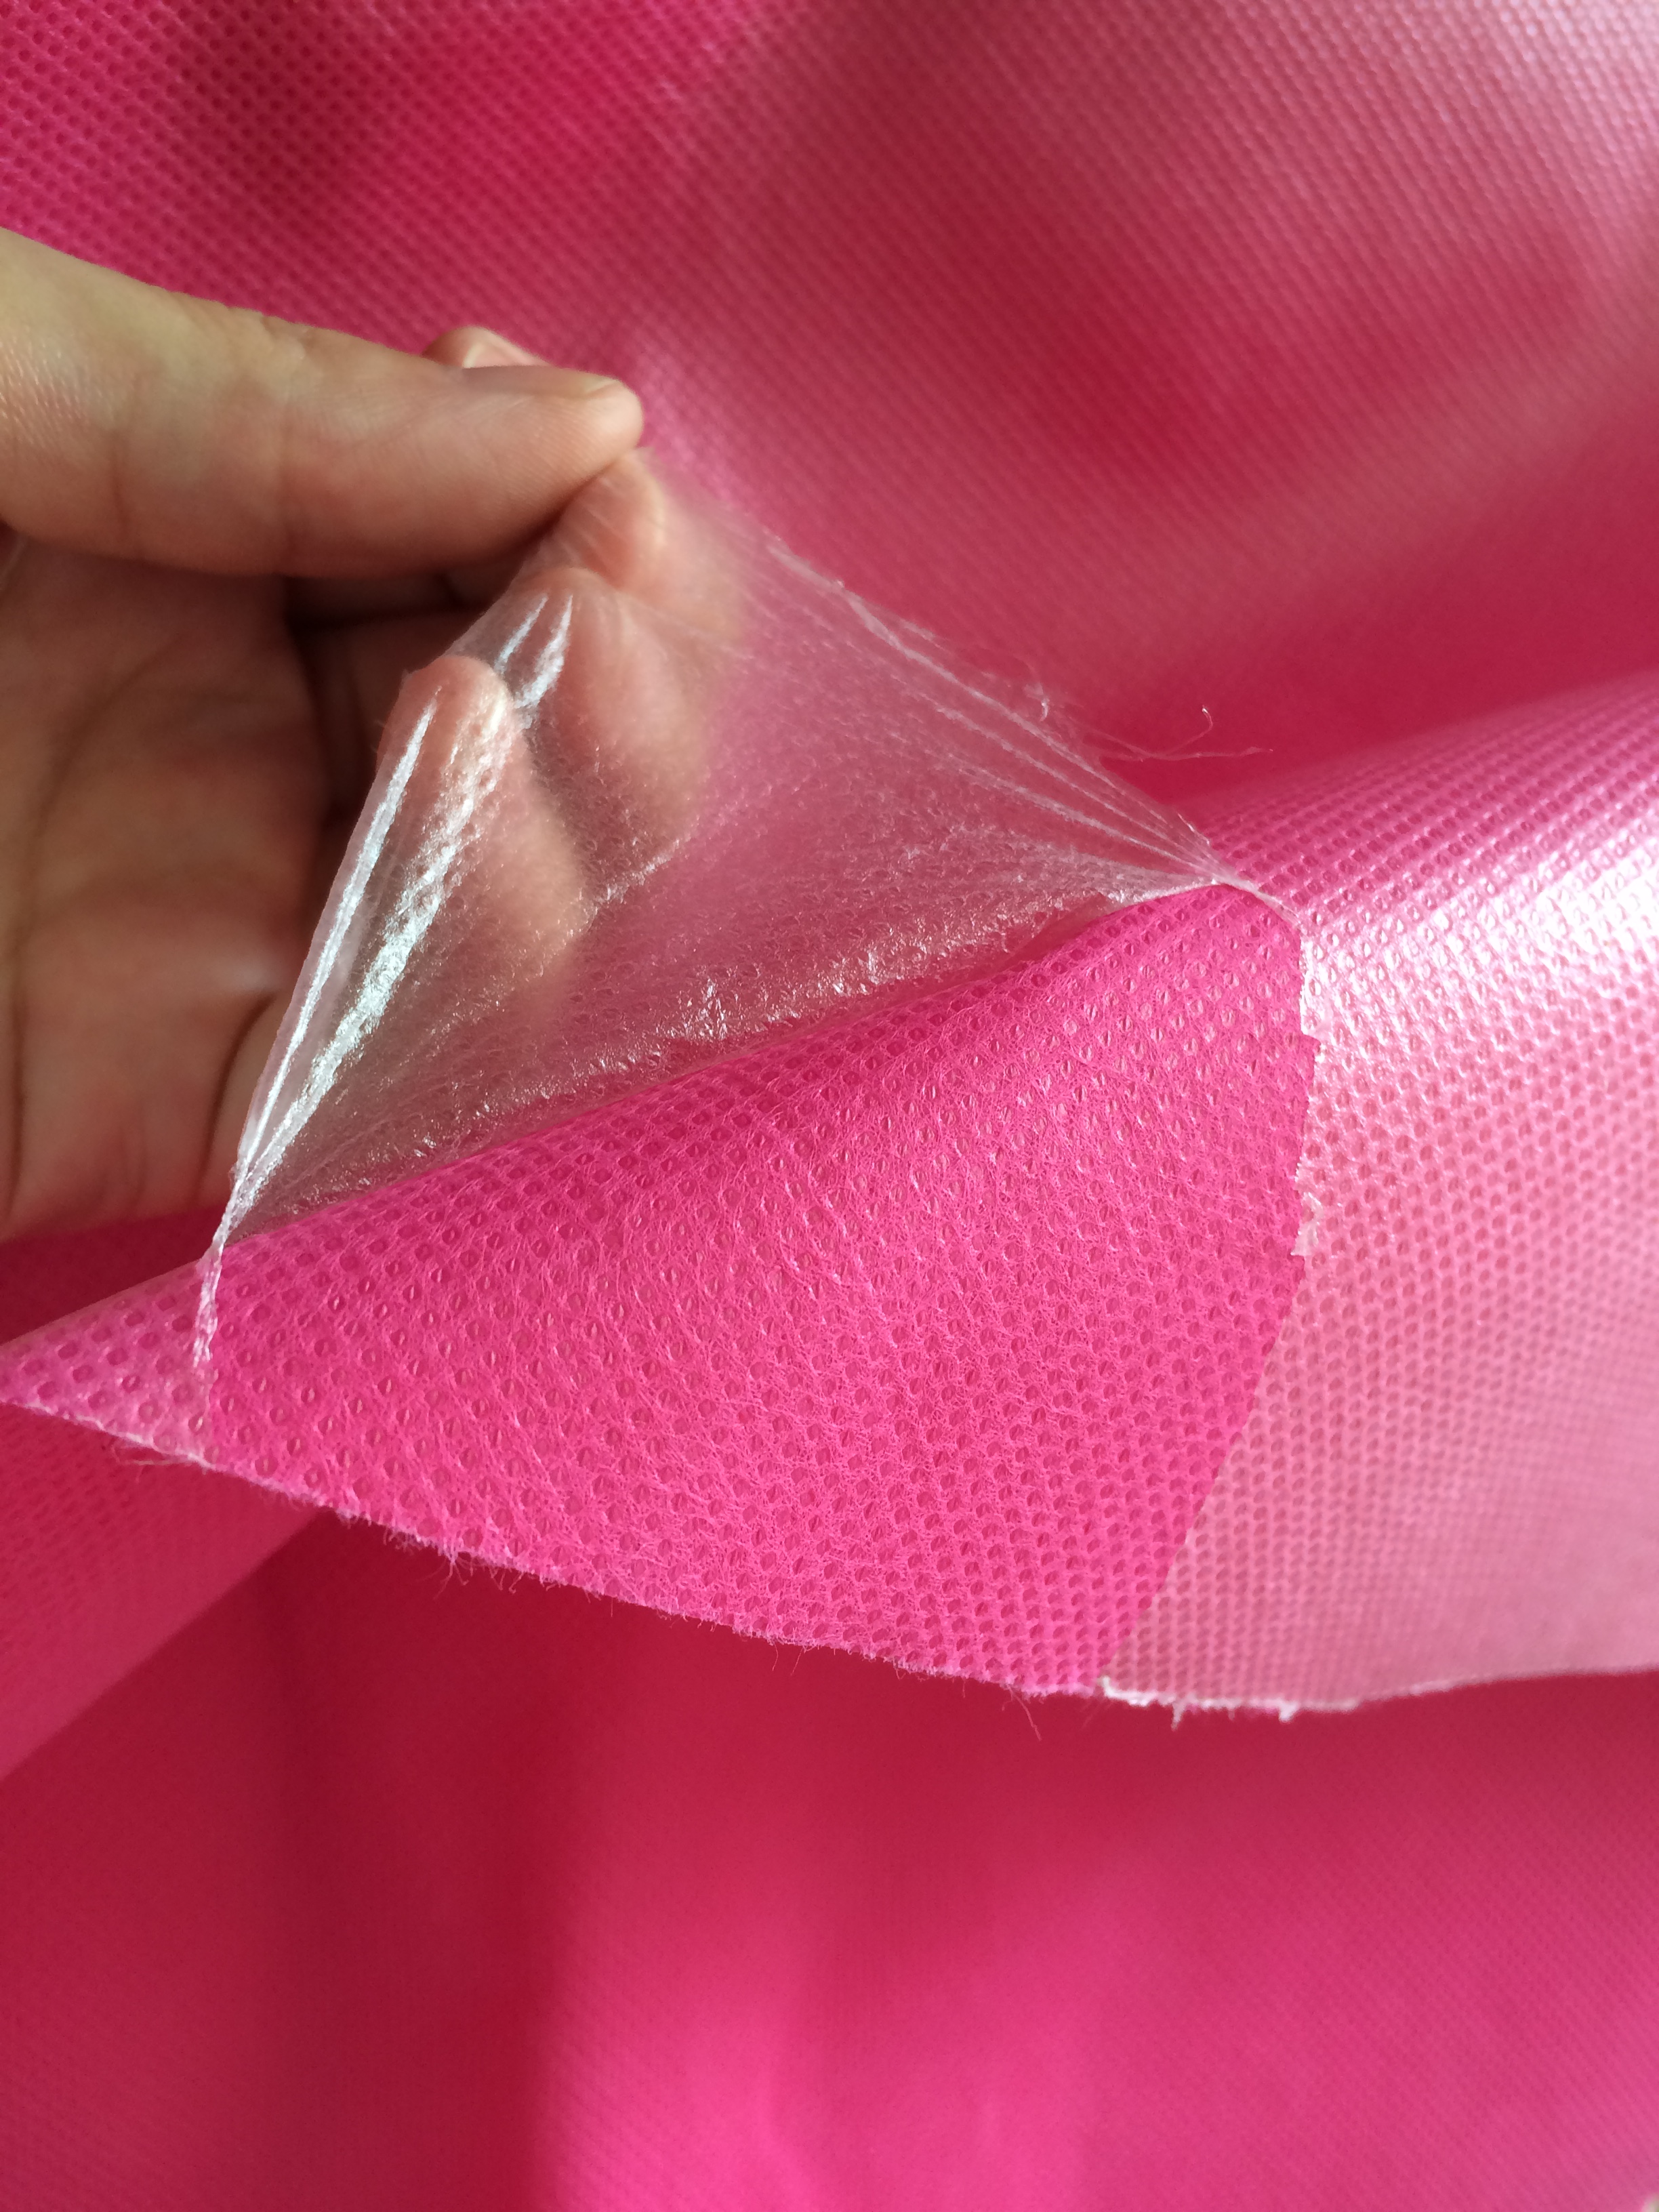 quali sono le caratteristiche del tessuto non tessuto laminato?